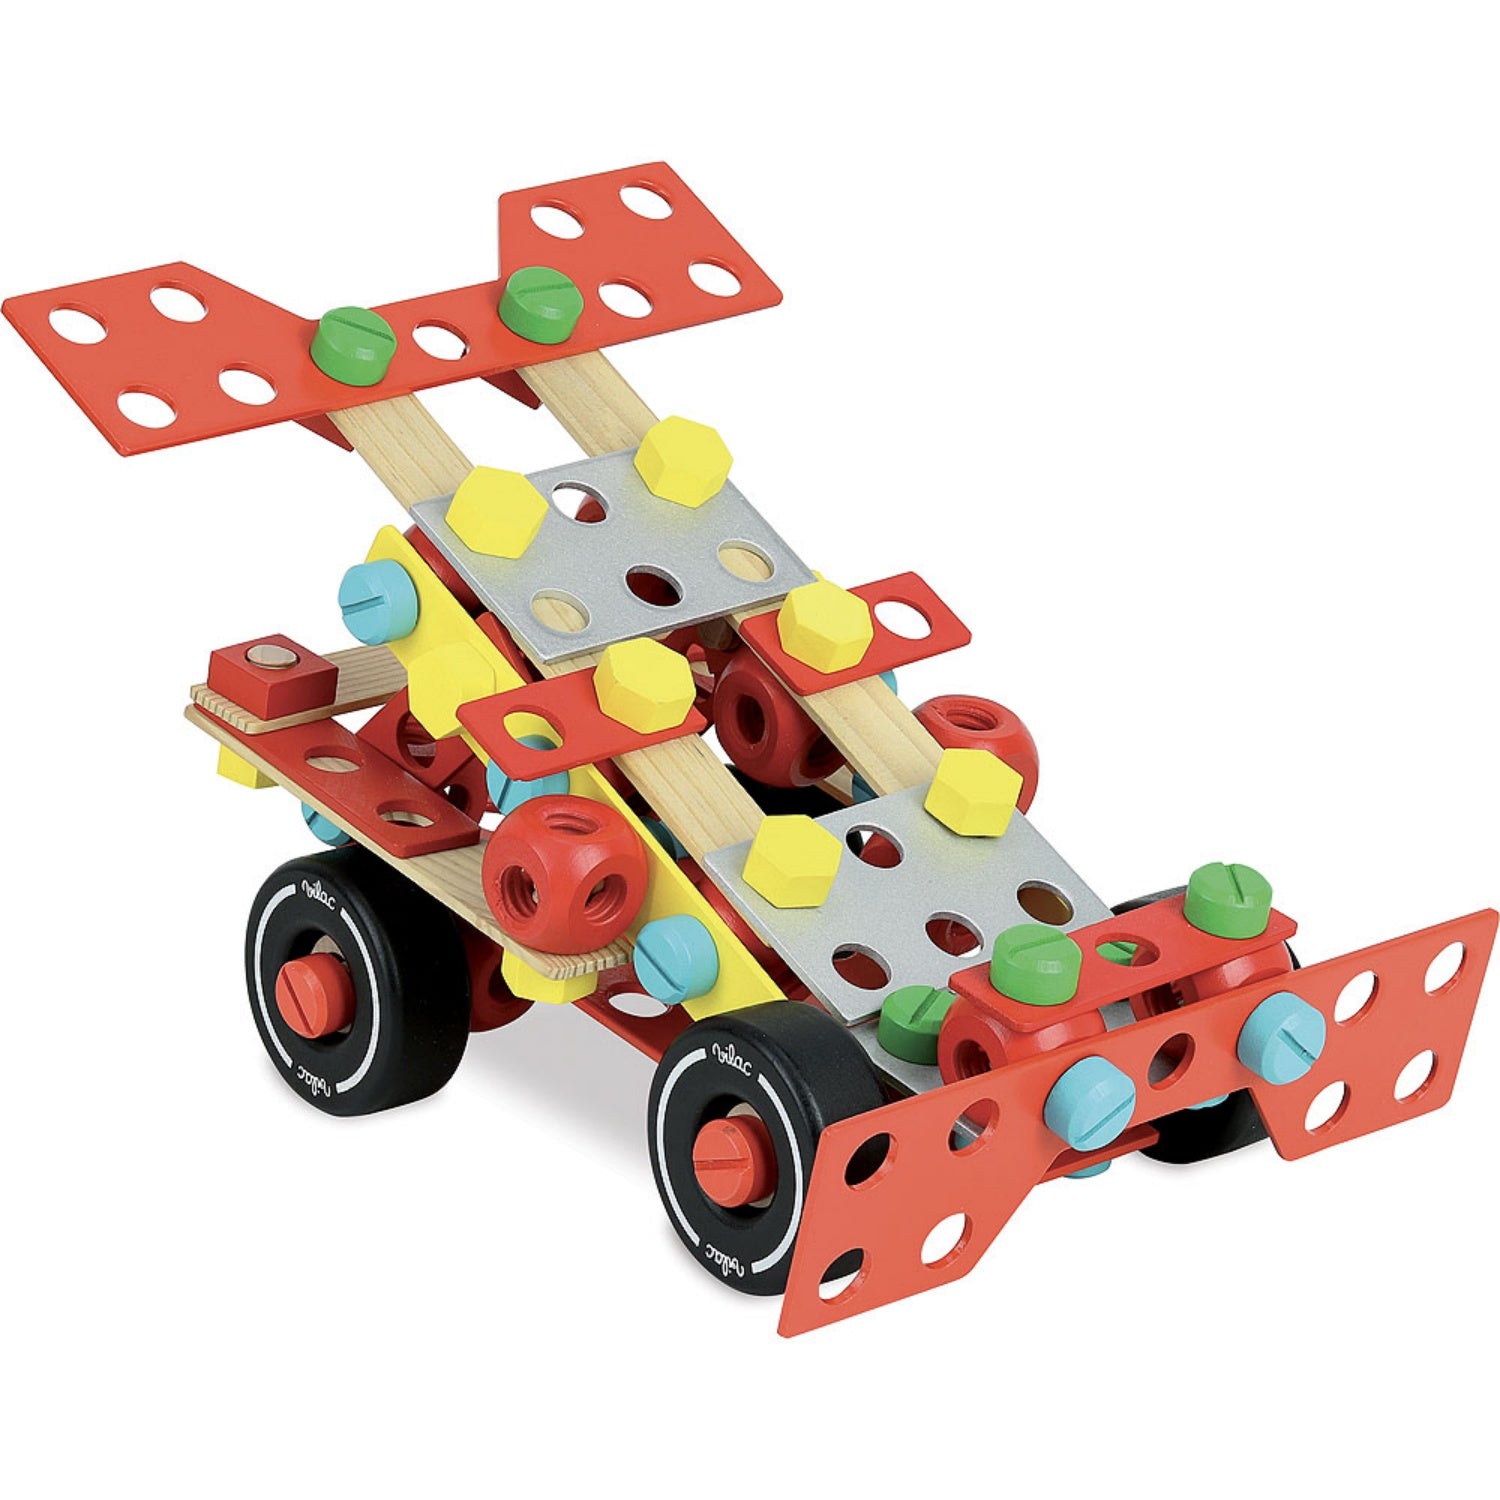 Vilac Wooden Construction Building Set ‘Super Batibloc’ | Educational Wooden Toy | Race Car | BeoVERDE.ie